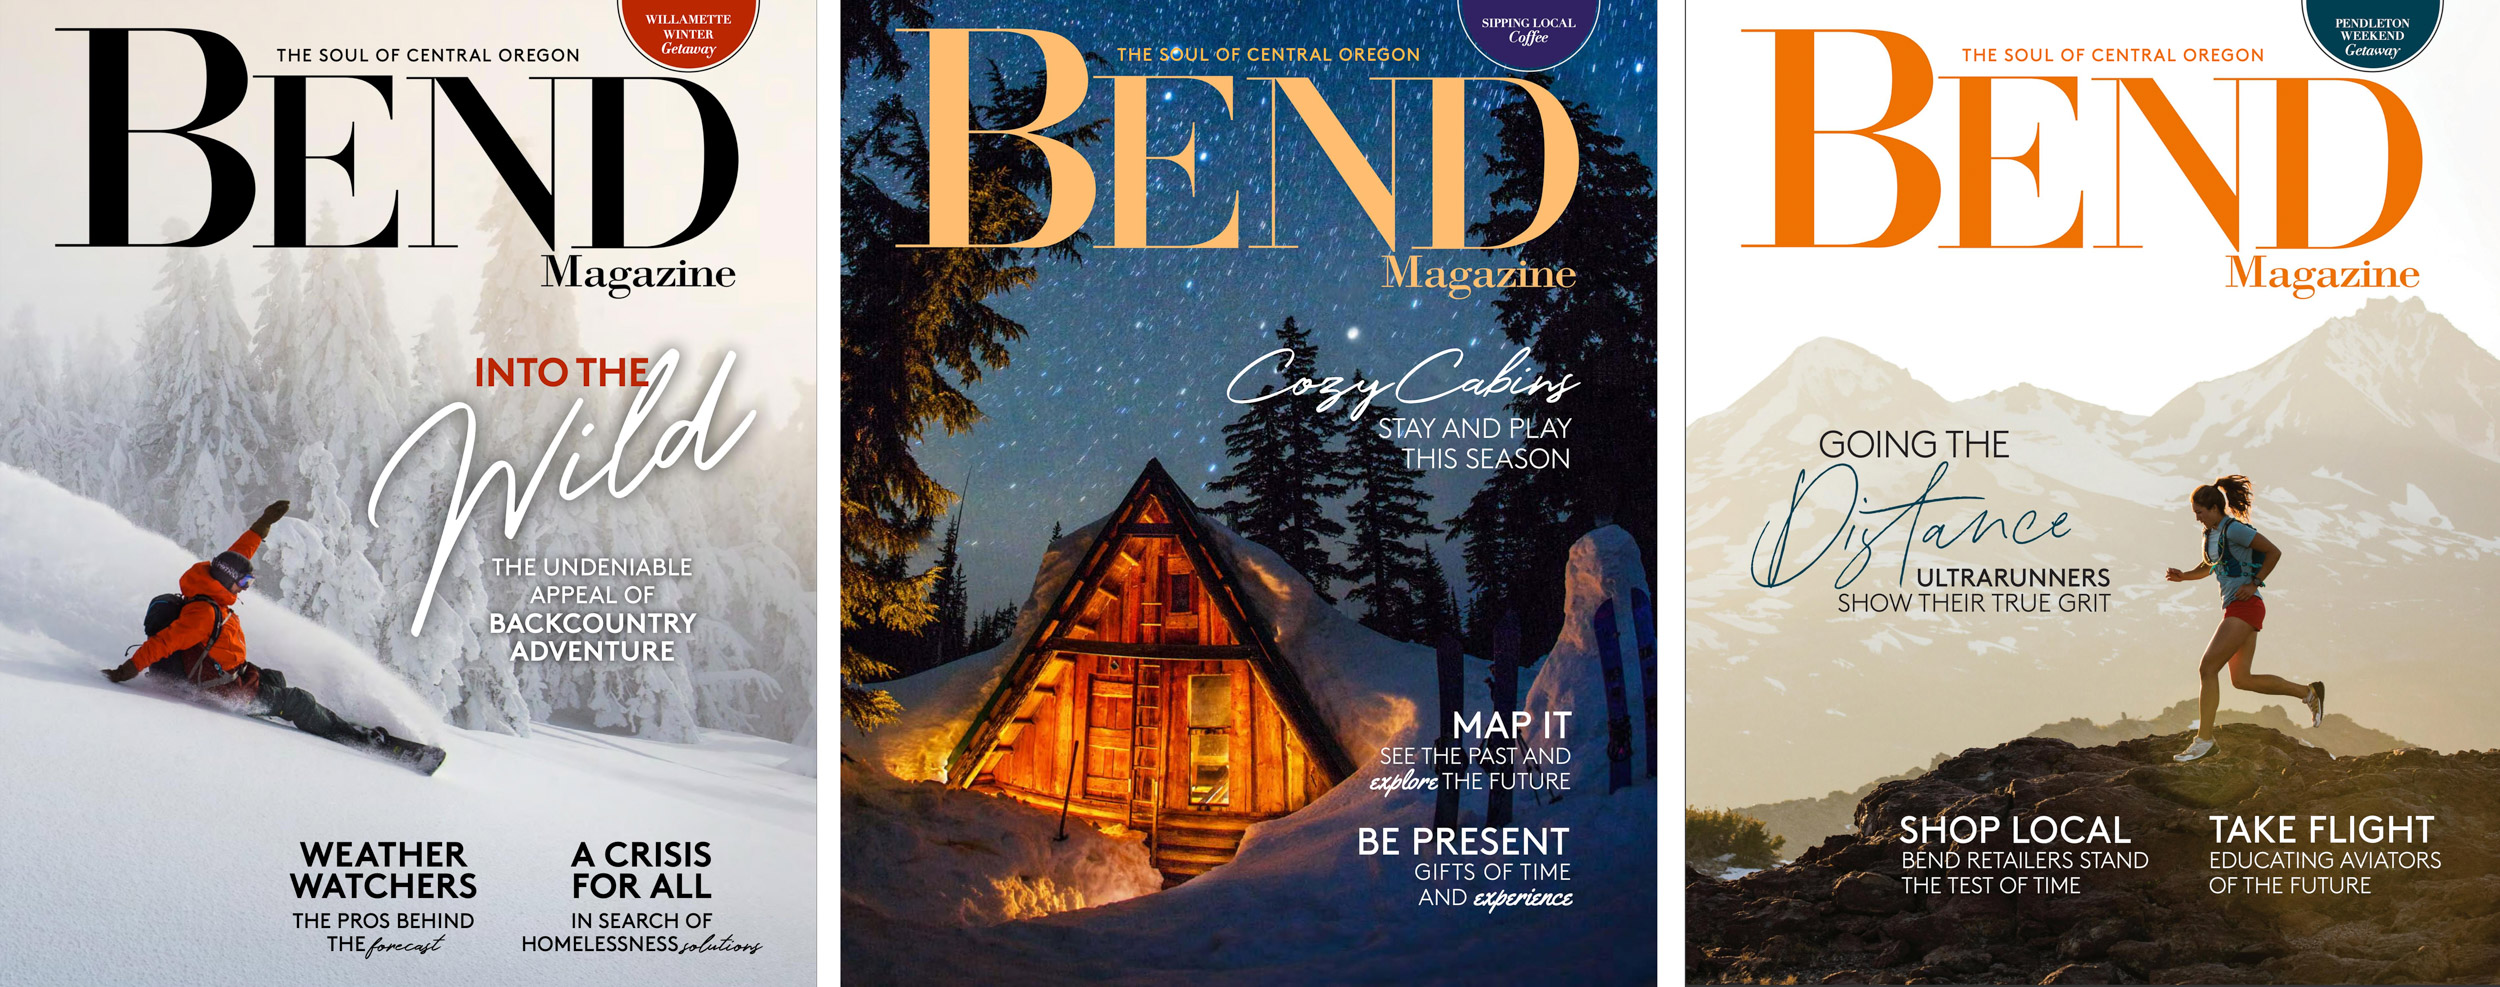 winter-cabin-snowboard-bend-magazne-cover